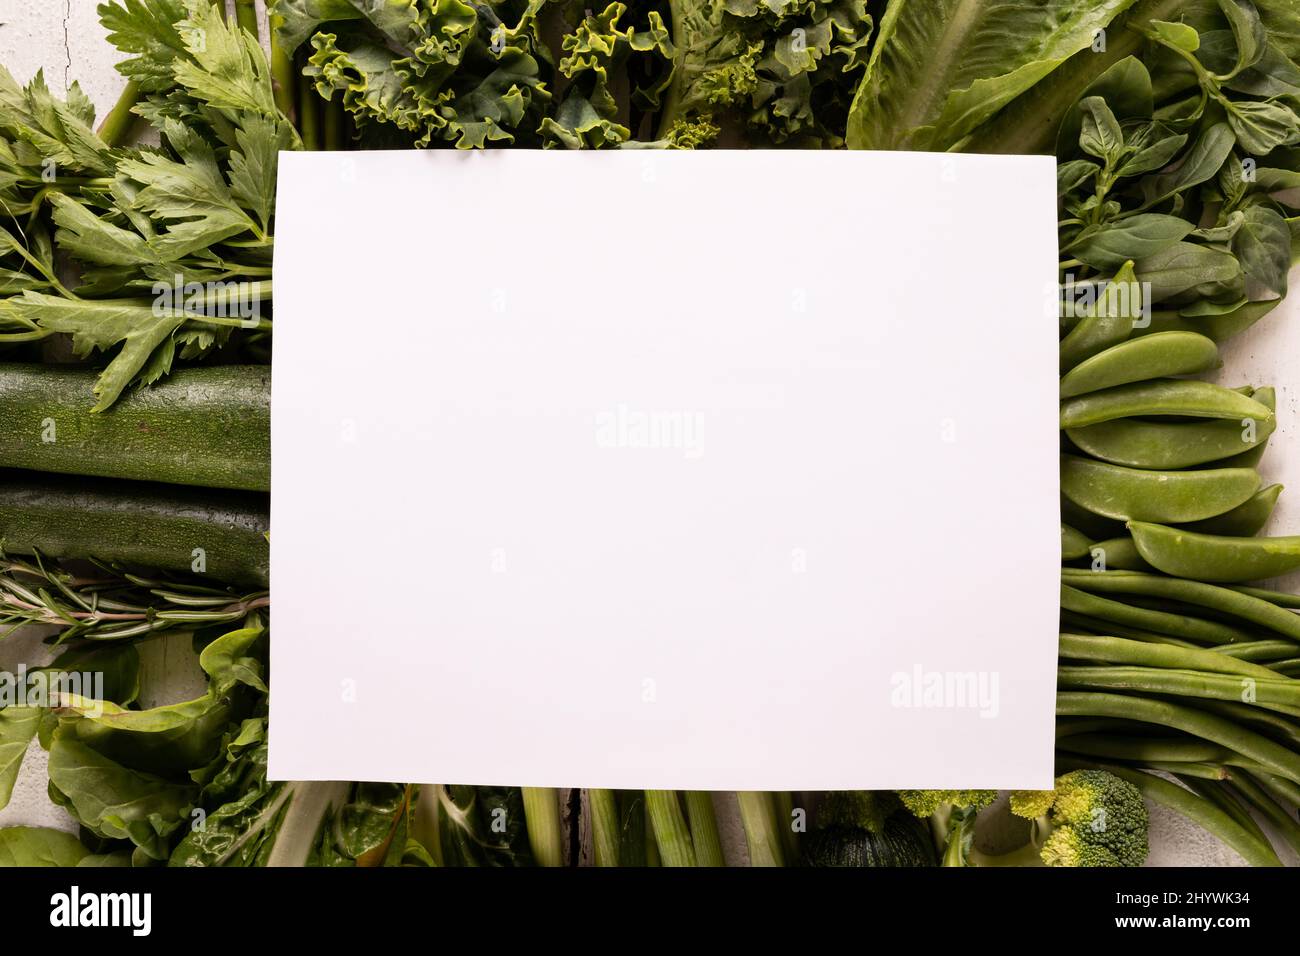 Direttamente sopra la dose di verdure fresche verdi sul tavolo con spazio copia Foto Stock